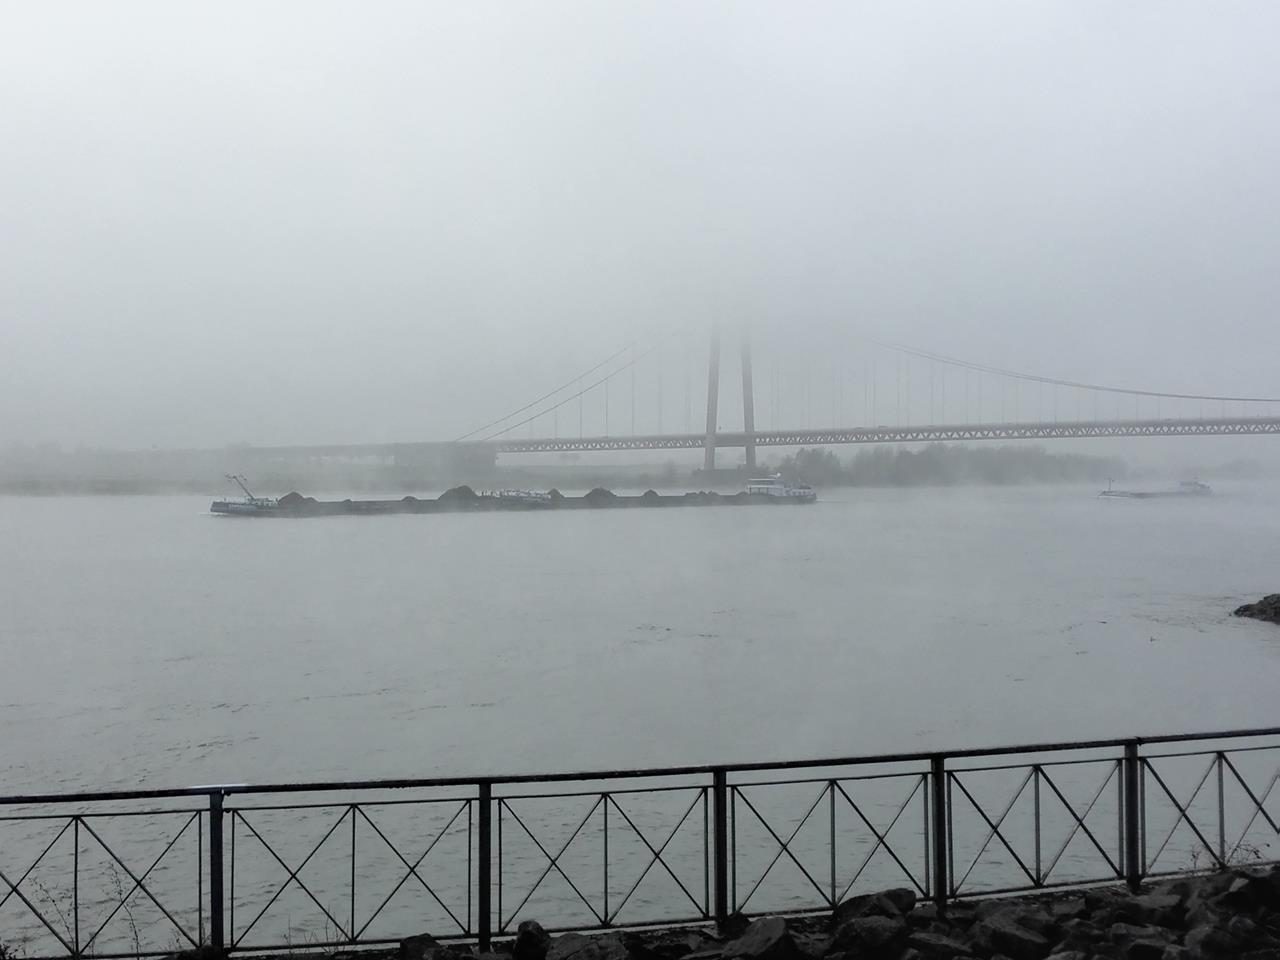 Die Rheinbrücke ist kaum zu sehen, obwohl nur wenige hundert Meter entfernt